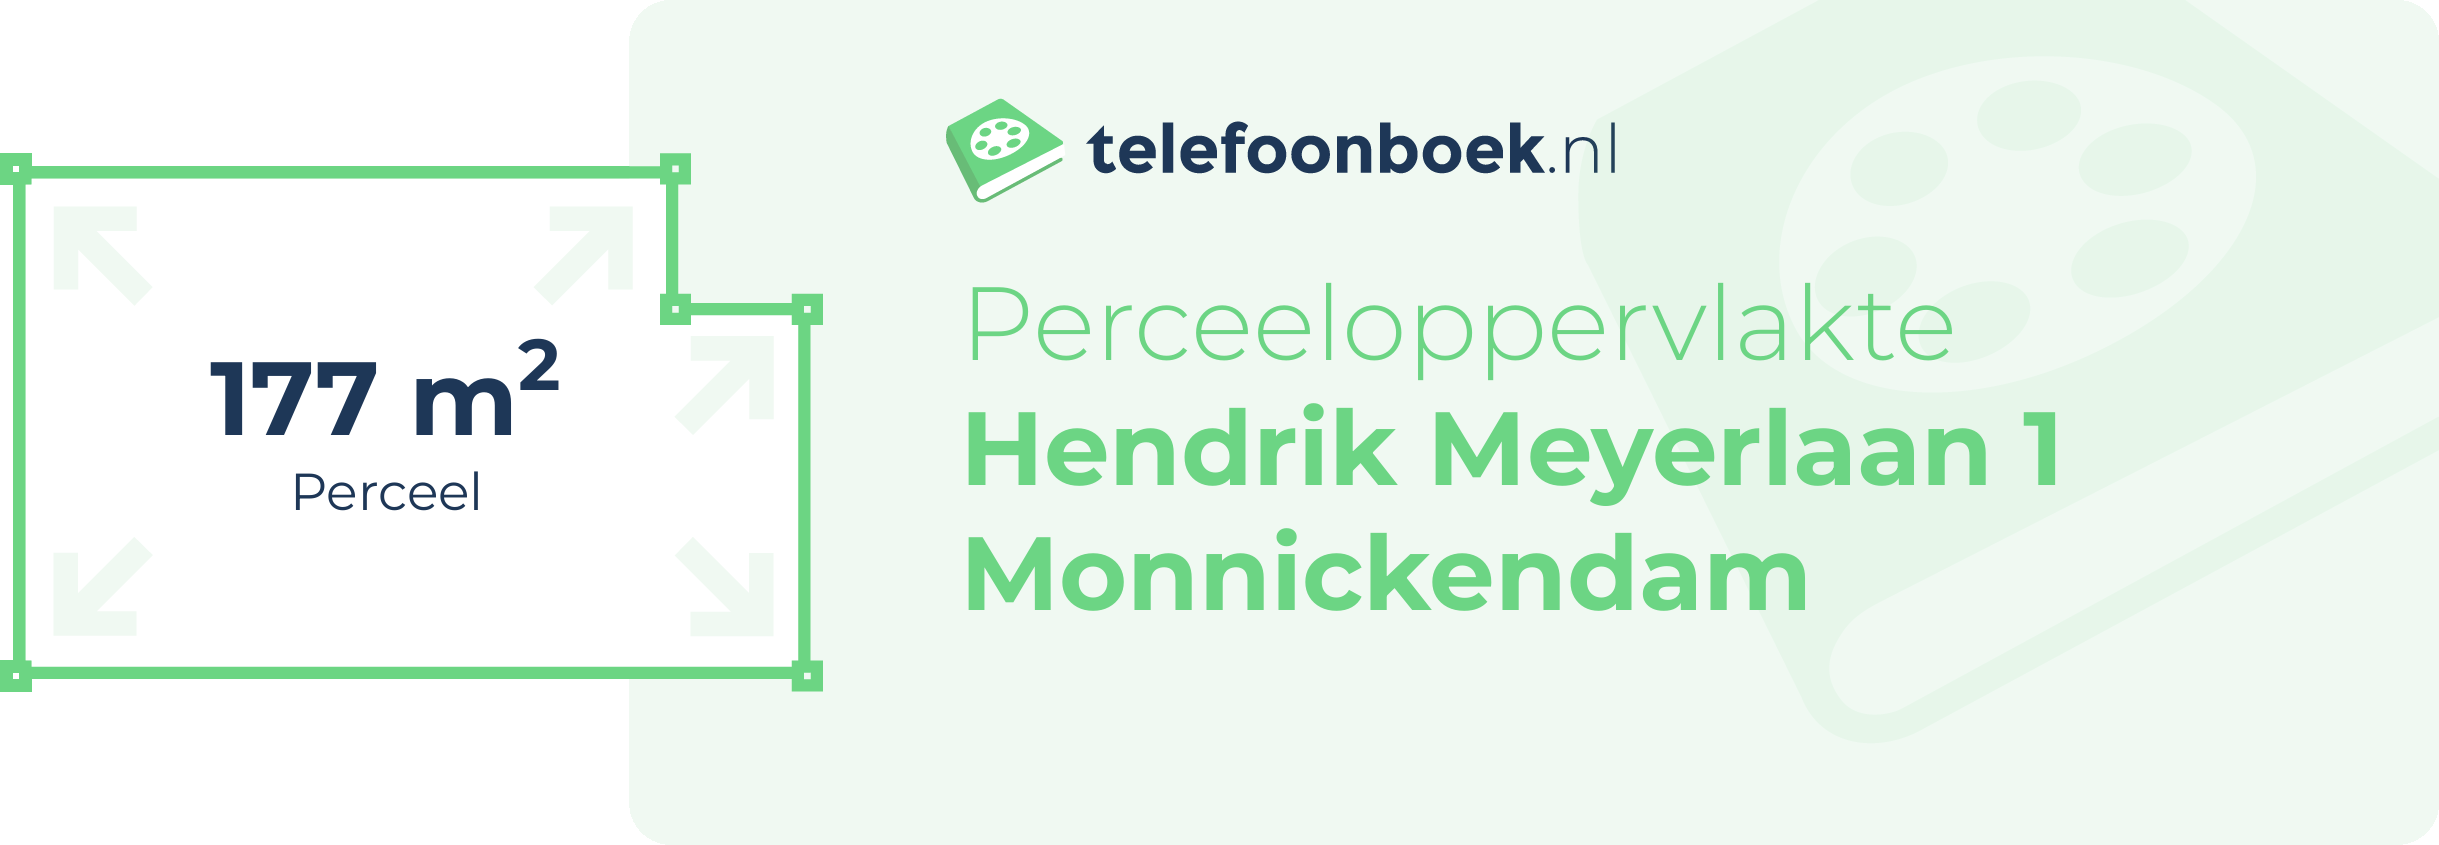 Perceeloppervlakte Hendrik Meyerlaan 1 Monnickendam